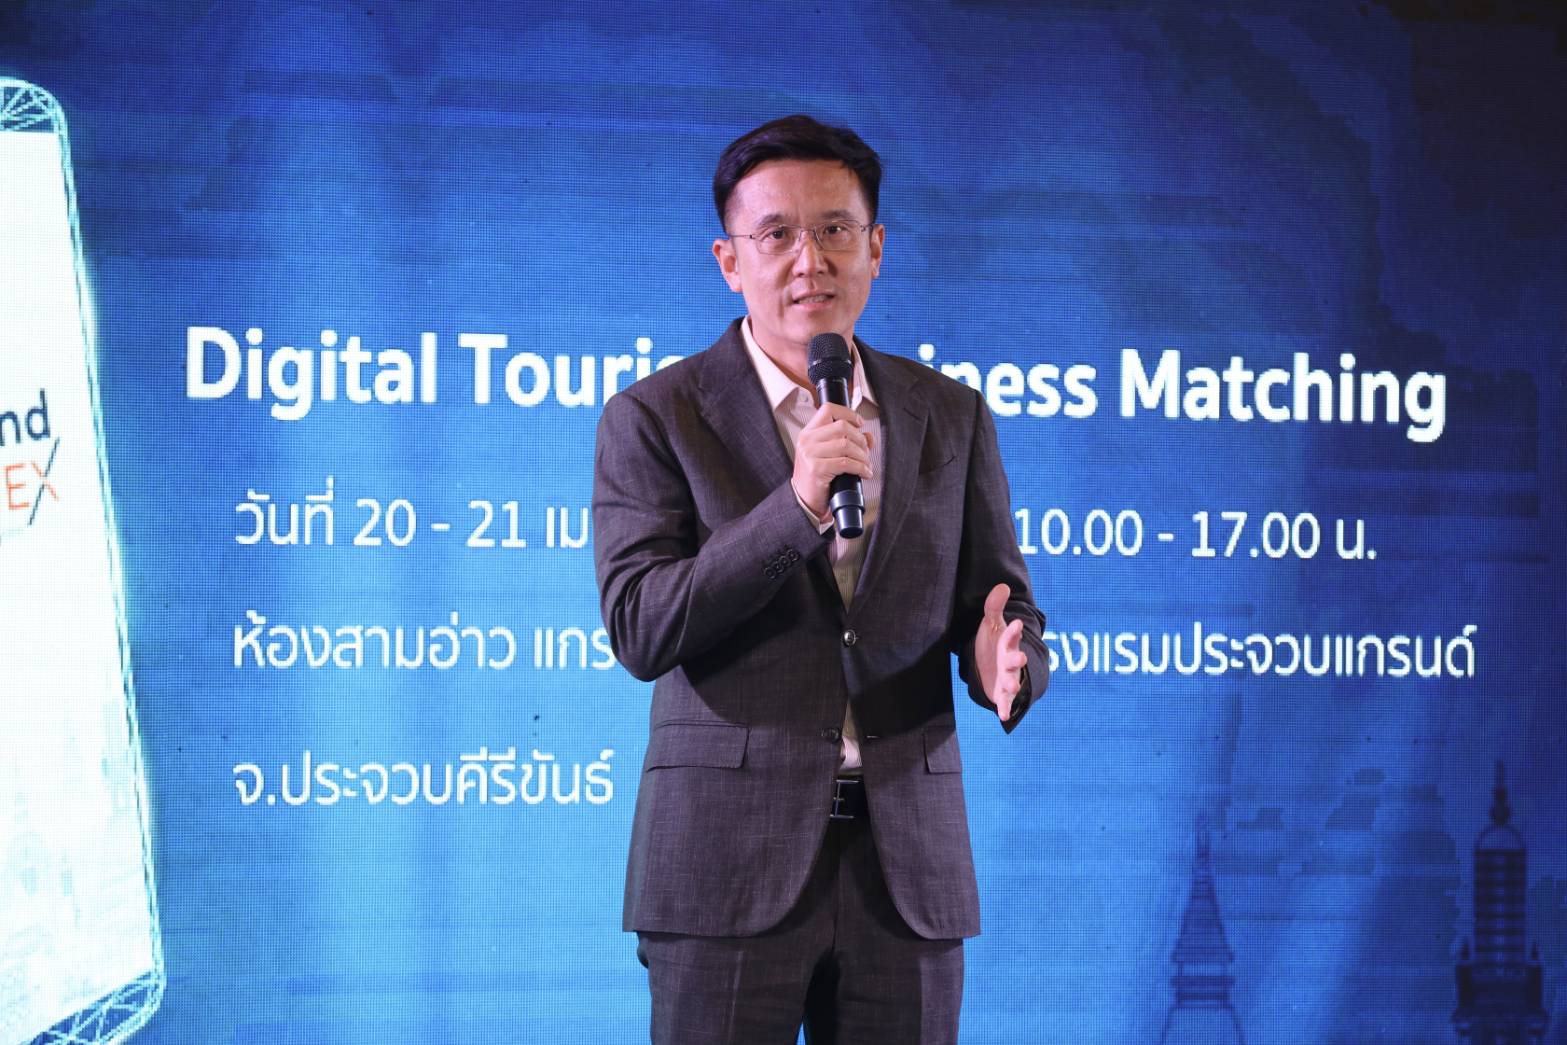 เลขาธิการ สดช. ร่วมพิธีเปิดกิจกรรม “Digital Tourism Business Matching ครั้งที่ 2” ณ จังหวัดประจวบคีรีขันธ์ 